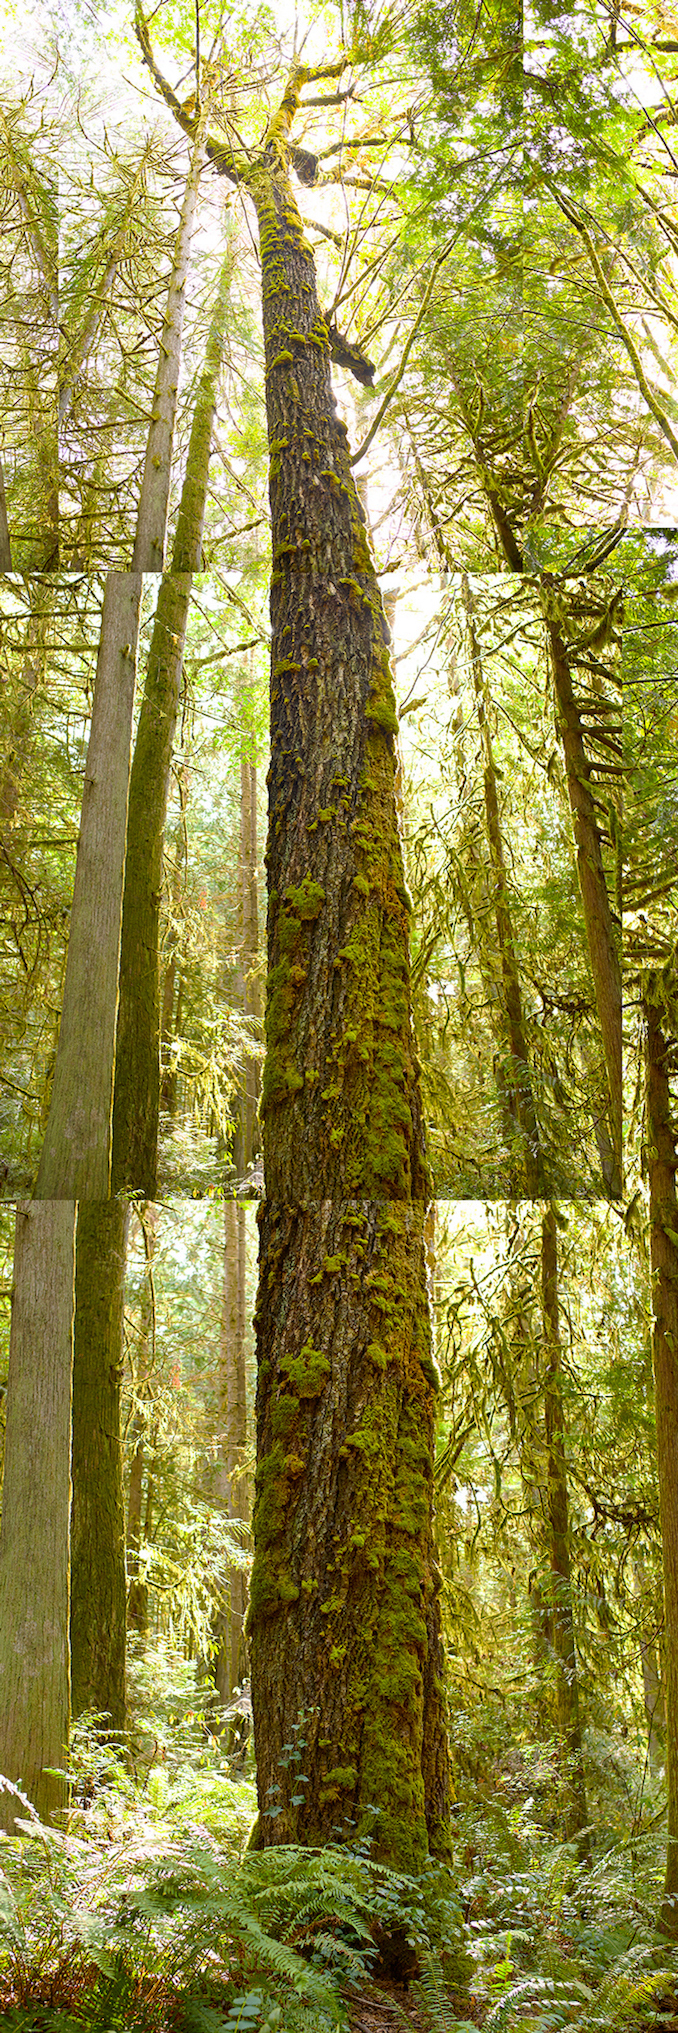 Trees II Seattle